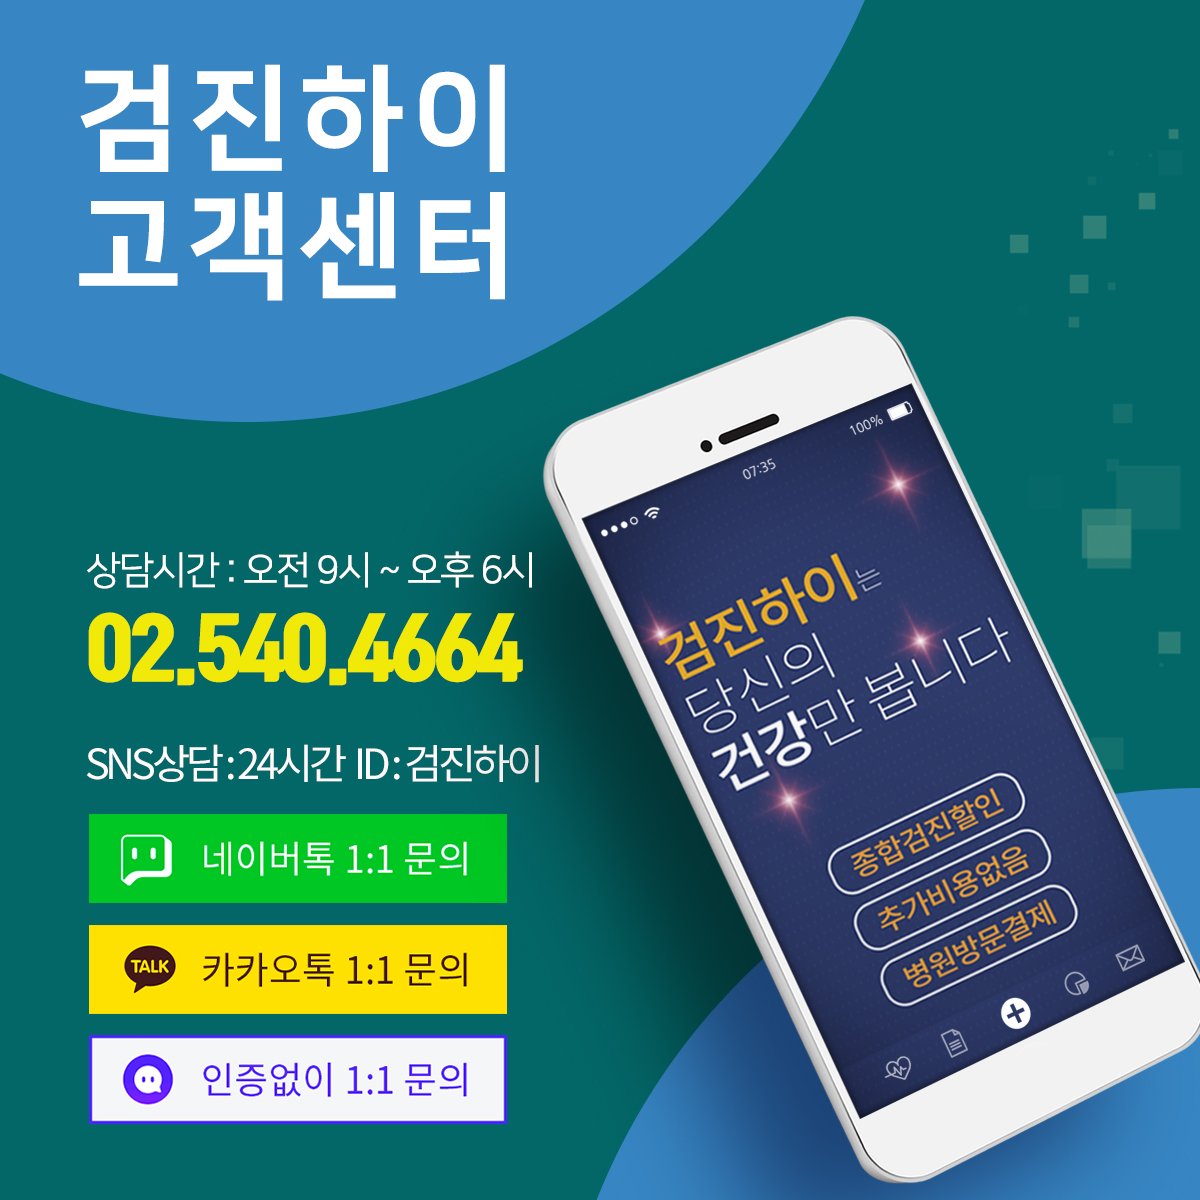 추가비용 없는 인천종합건강검진센터 예약은 검진하이 : 제휴병원소식